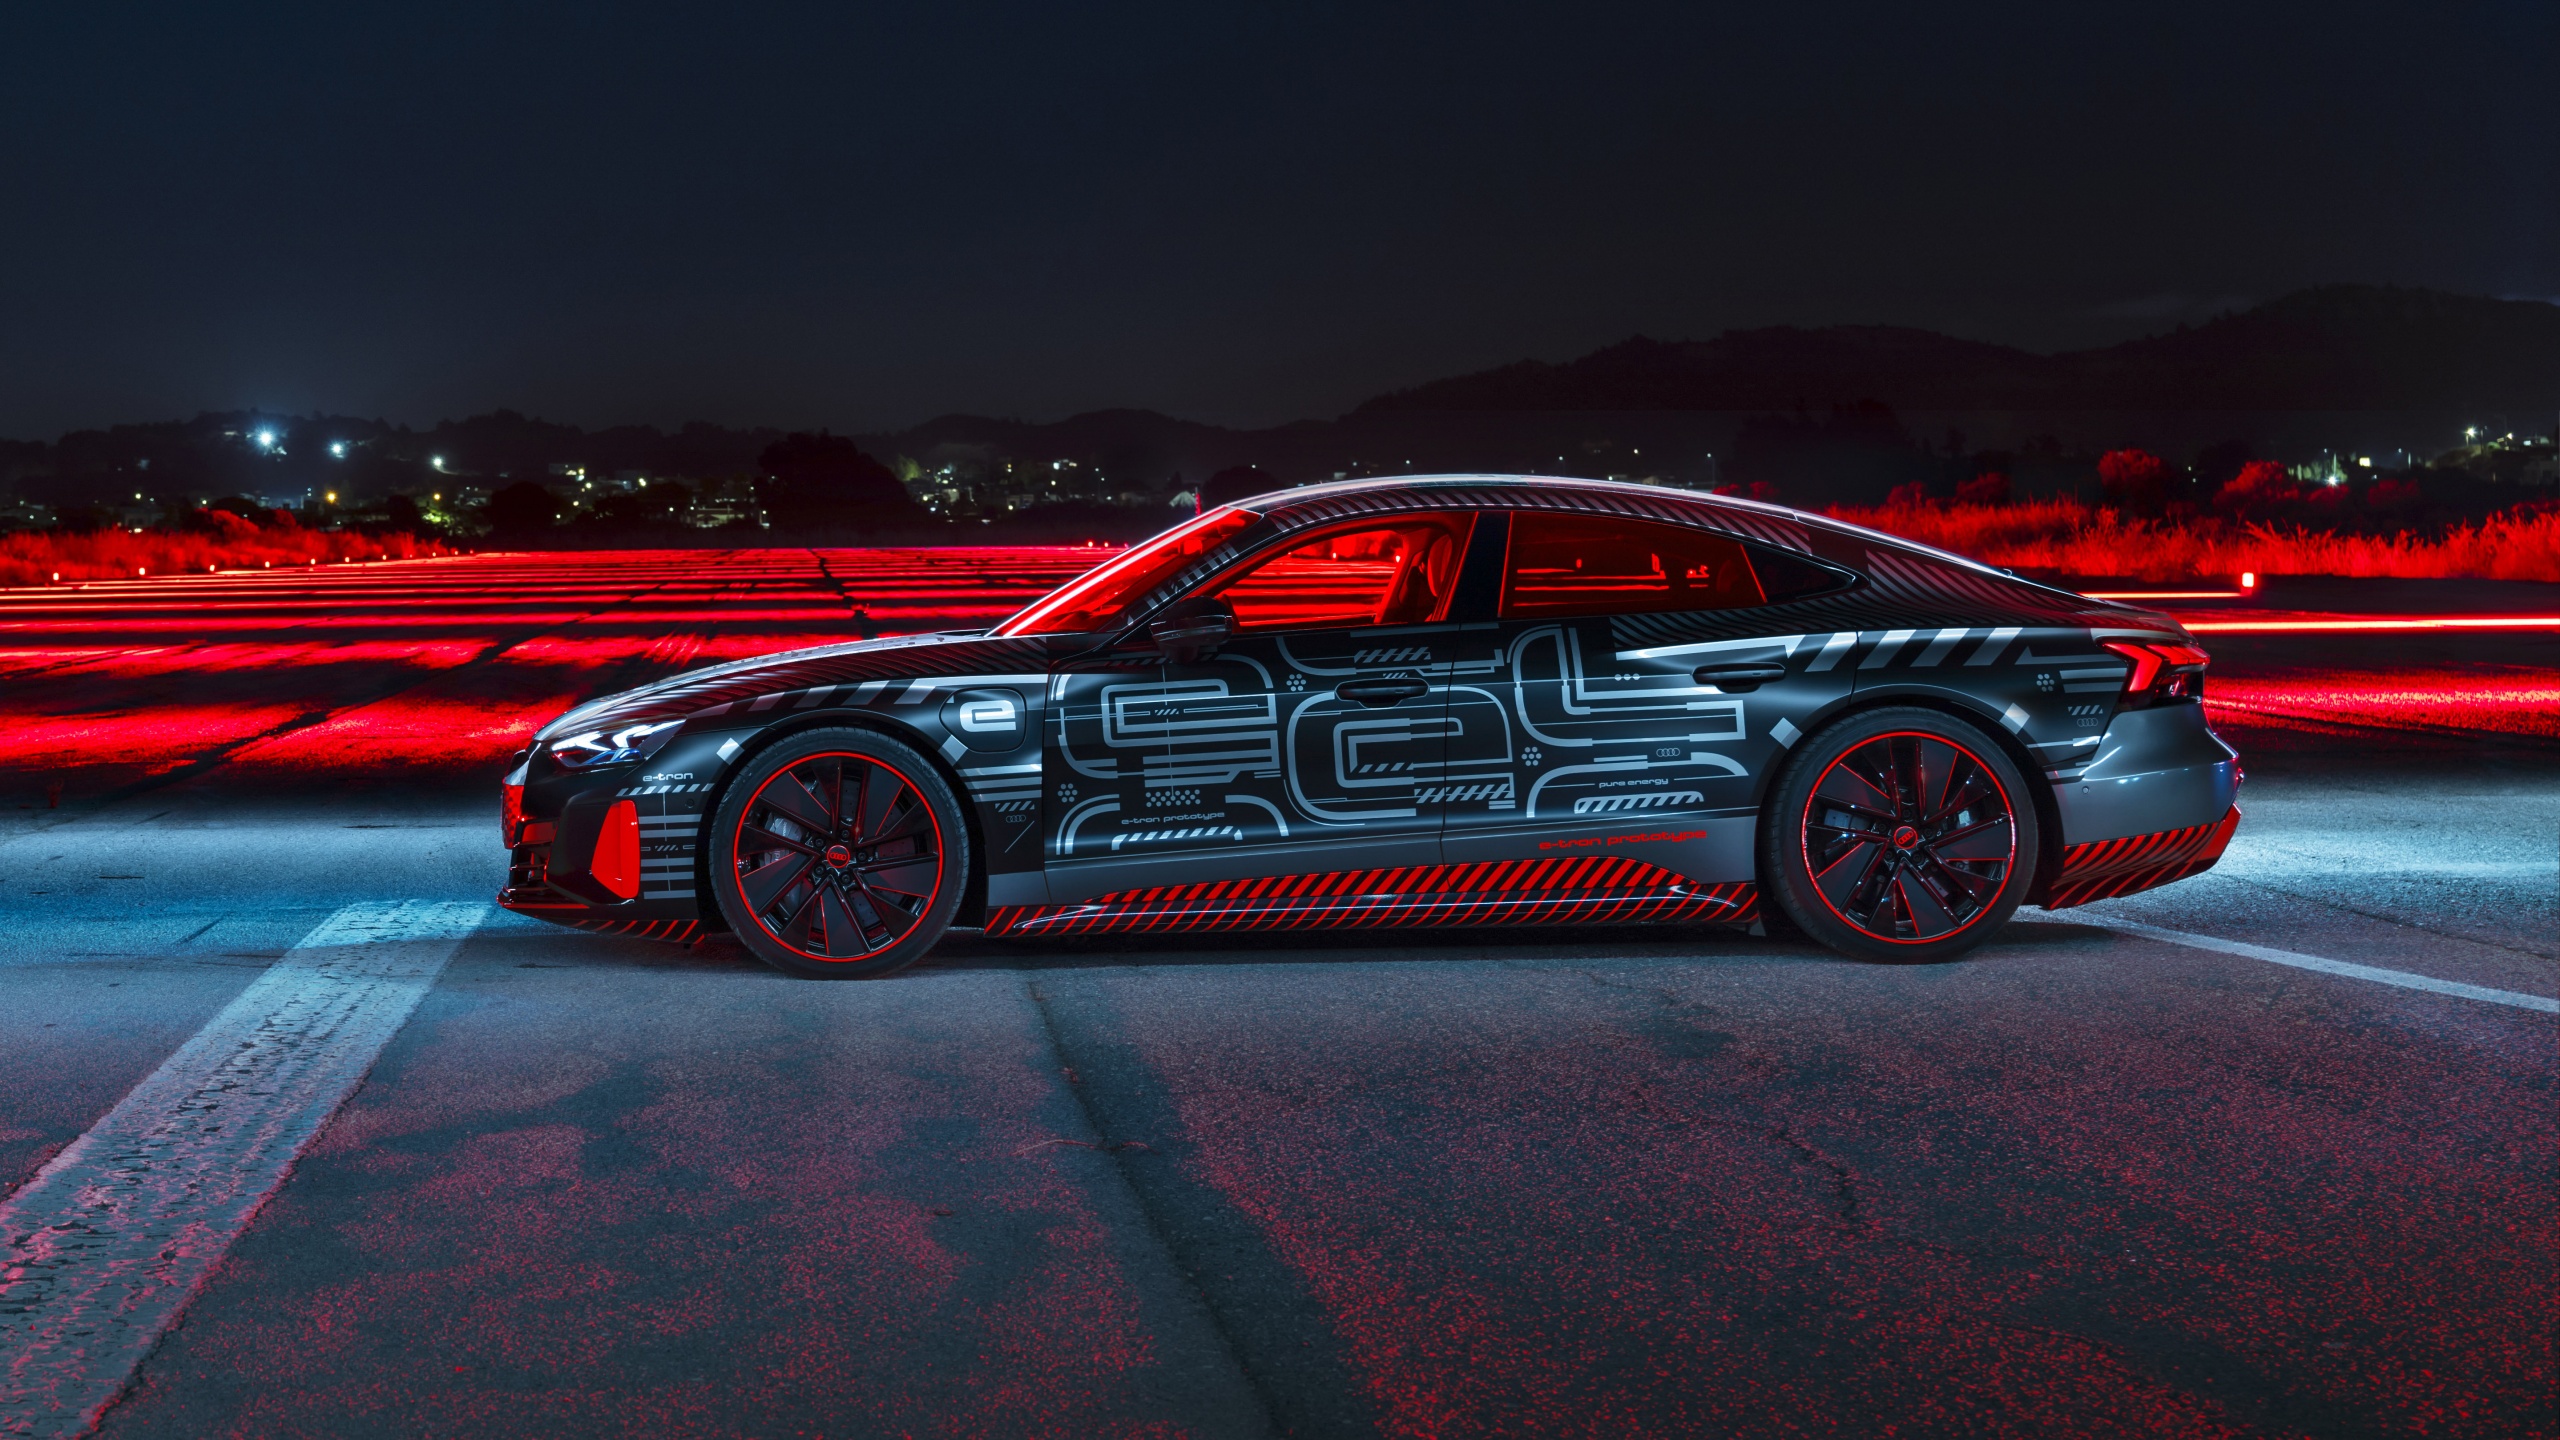 Audi E Tron Wallpaper